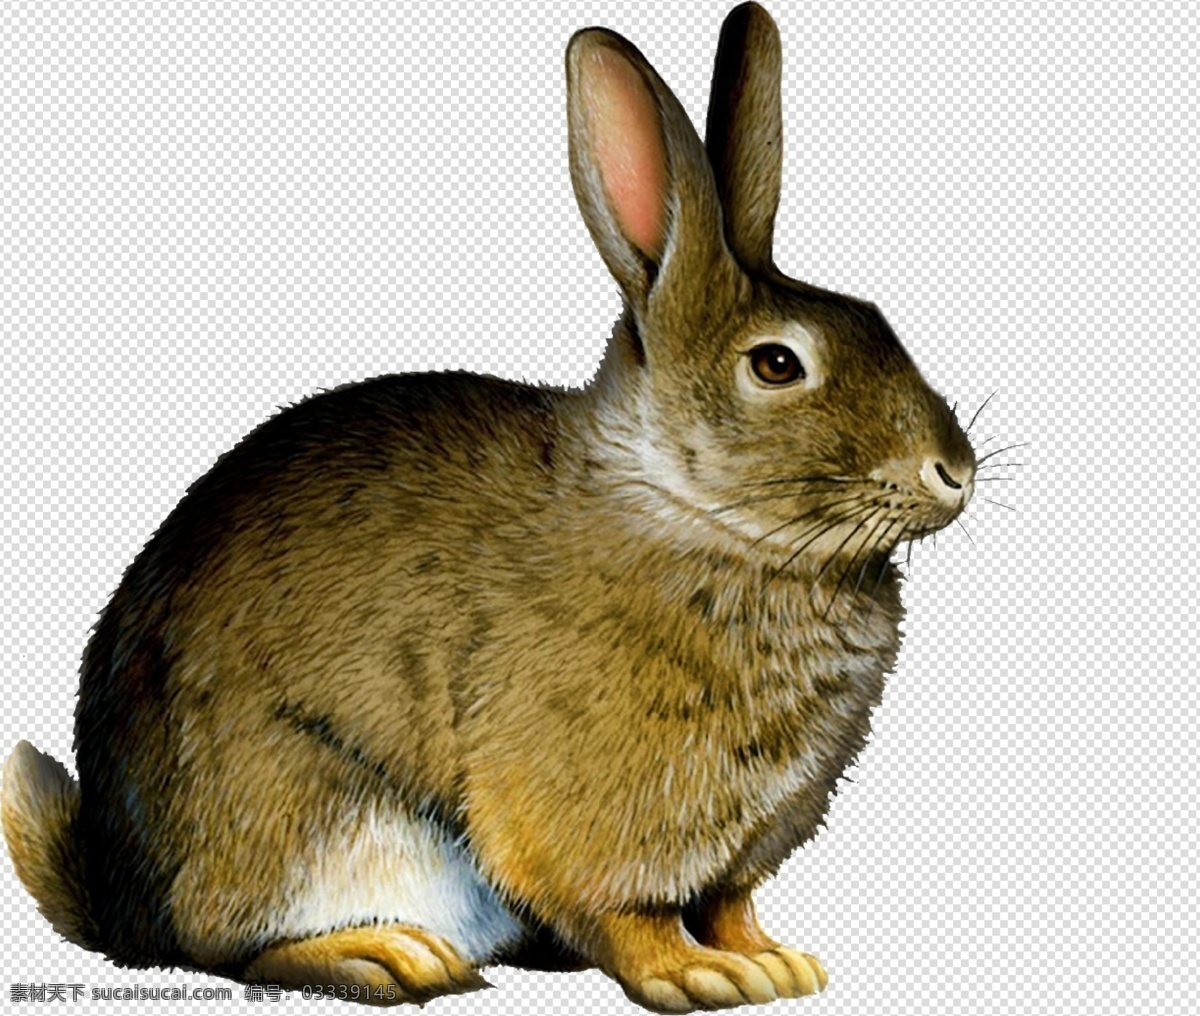 兔子 兔图片 兔 可爱 小可爱 毛绒兔 透明底 动物 免抠图 psd分层图 分层图 免扣 透明 透明背景 分层